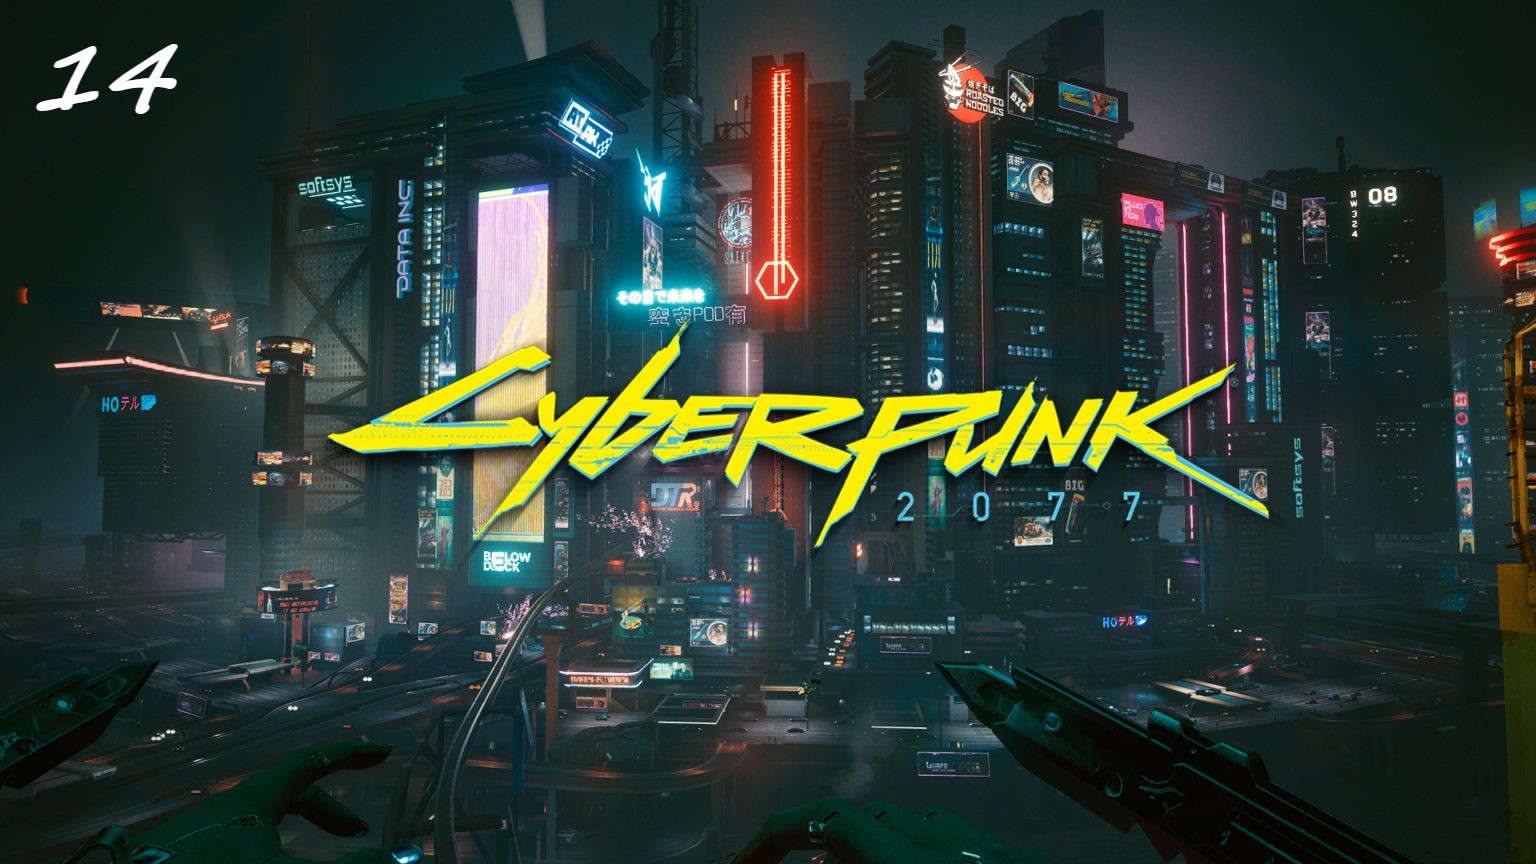 Прохождение Cyberpunk 2077 на русском - Часть четырнадцатая. Кукольный домик